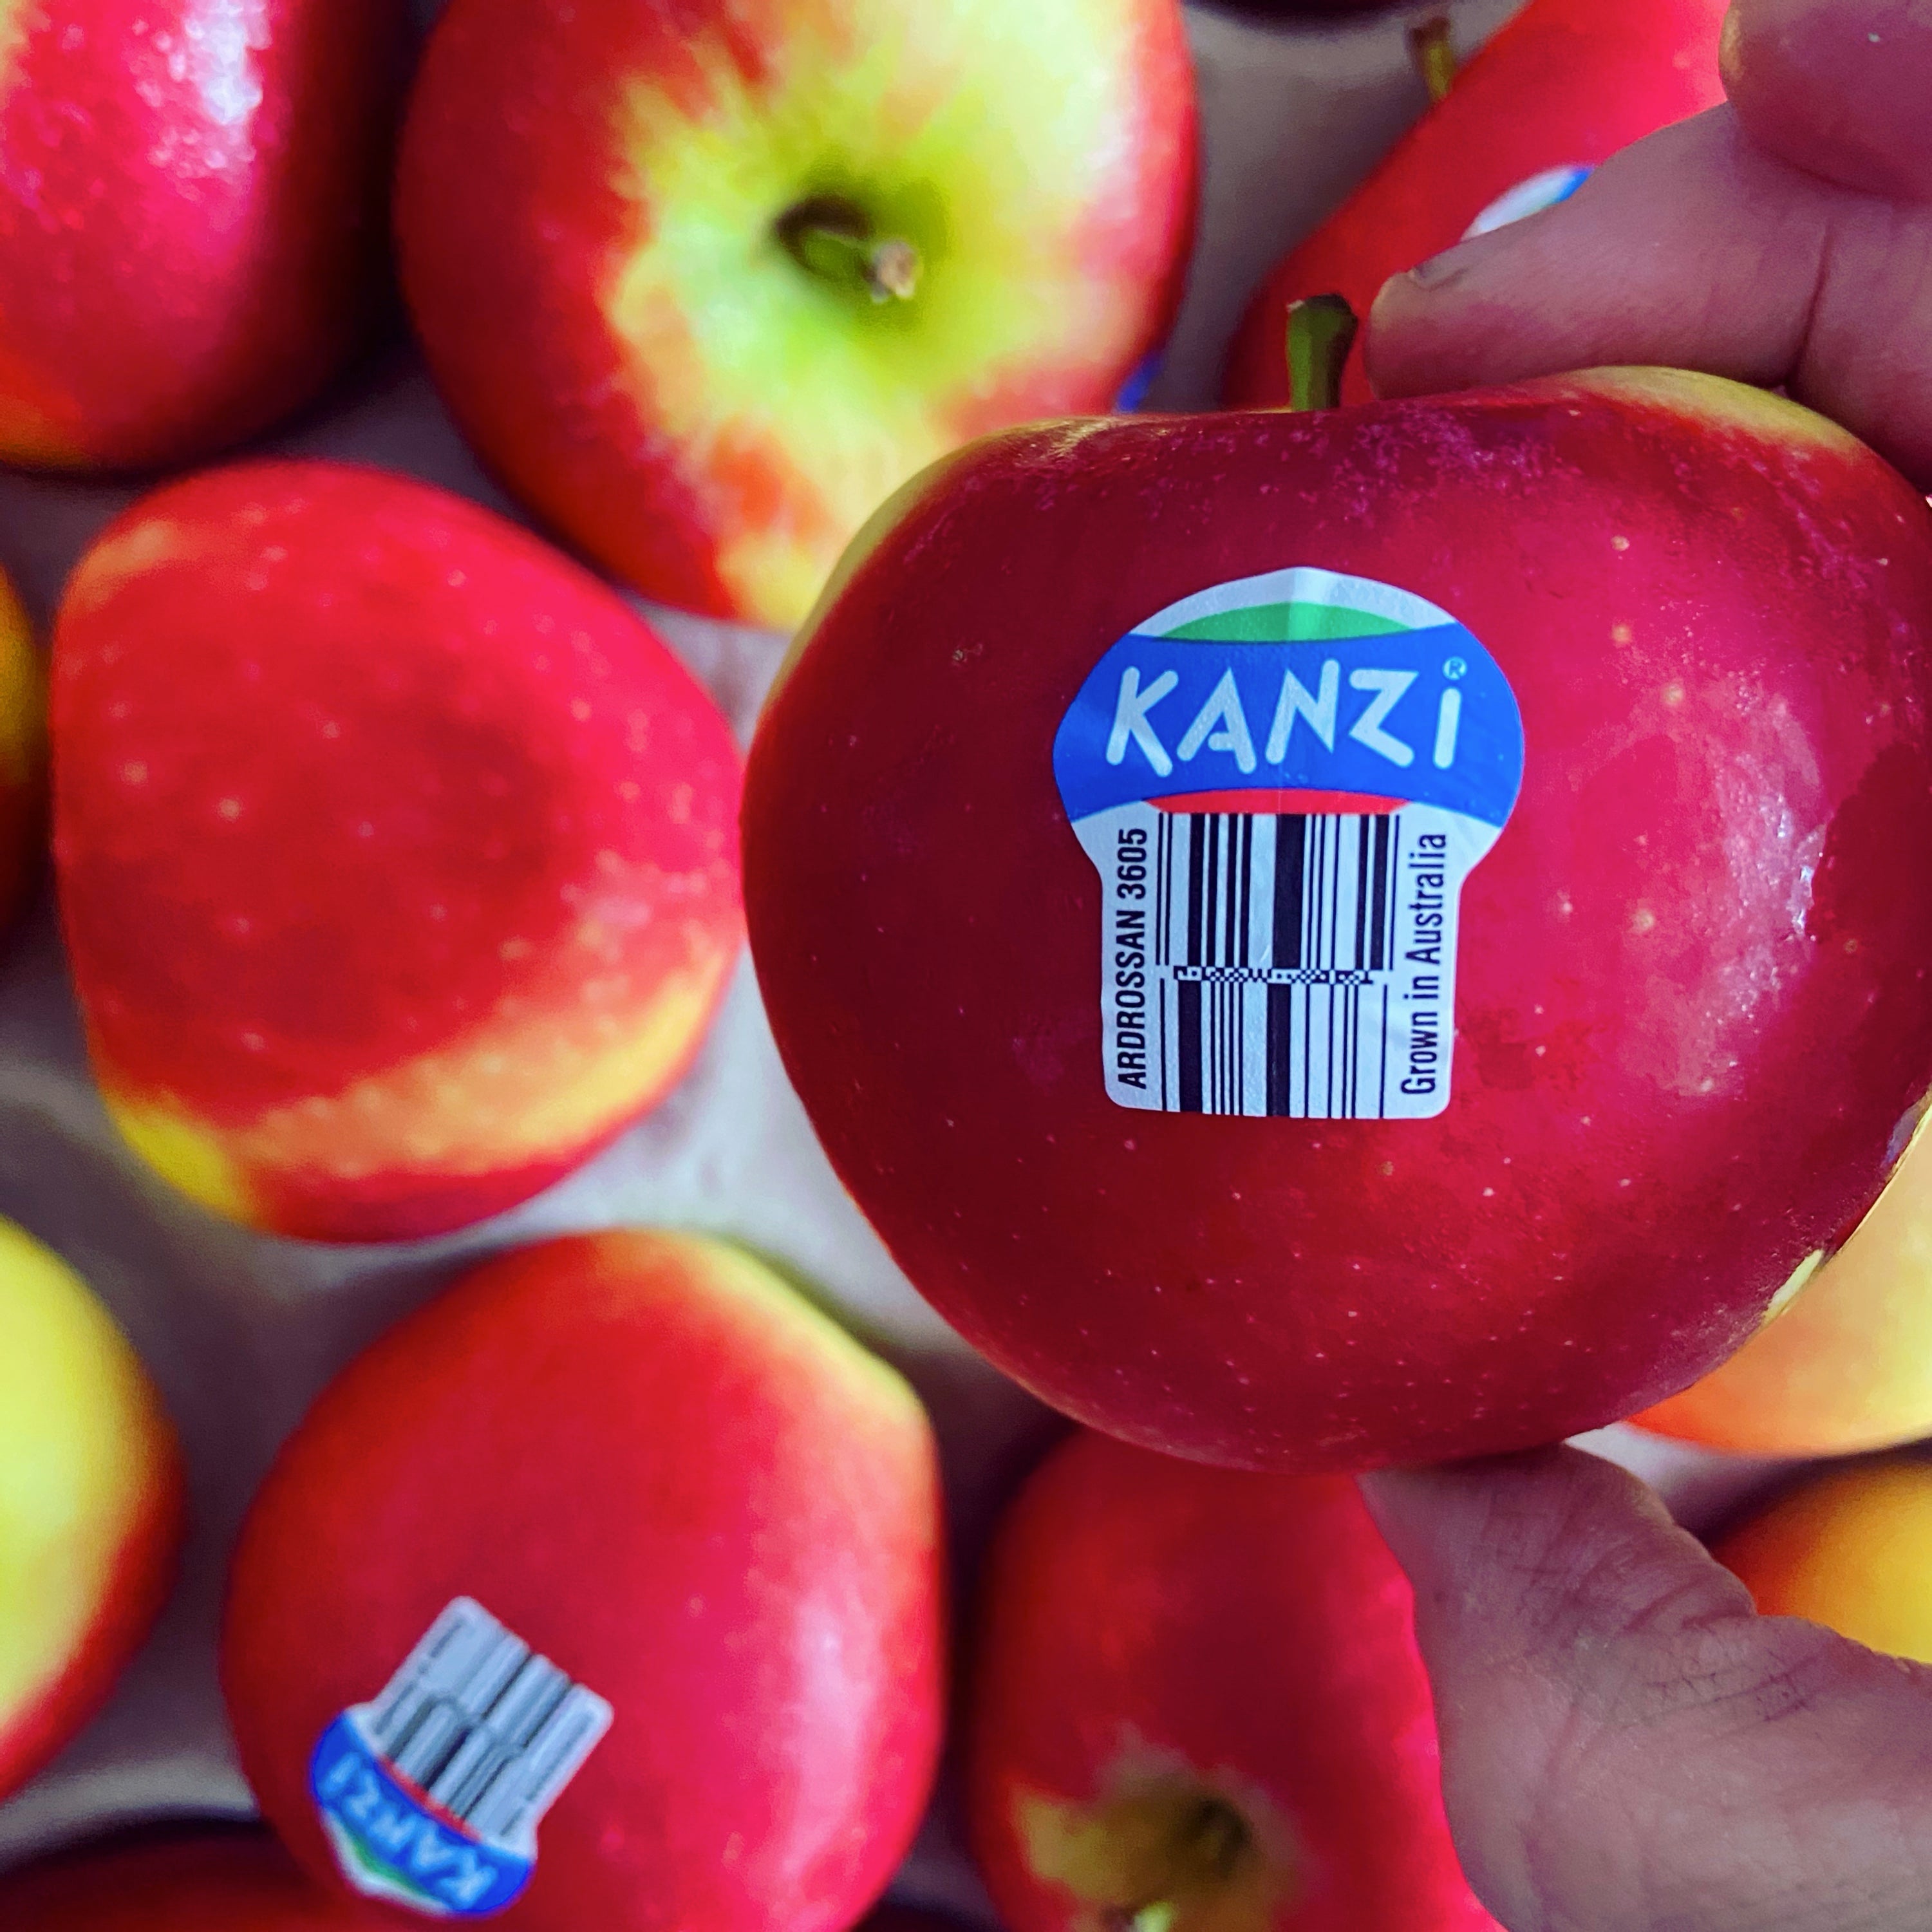 Apples - Kanzi - Each